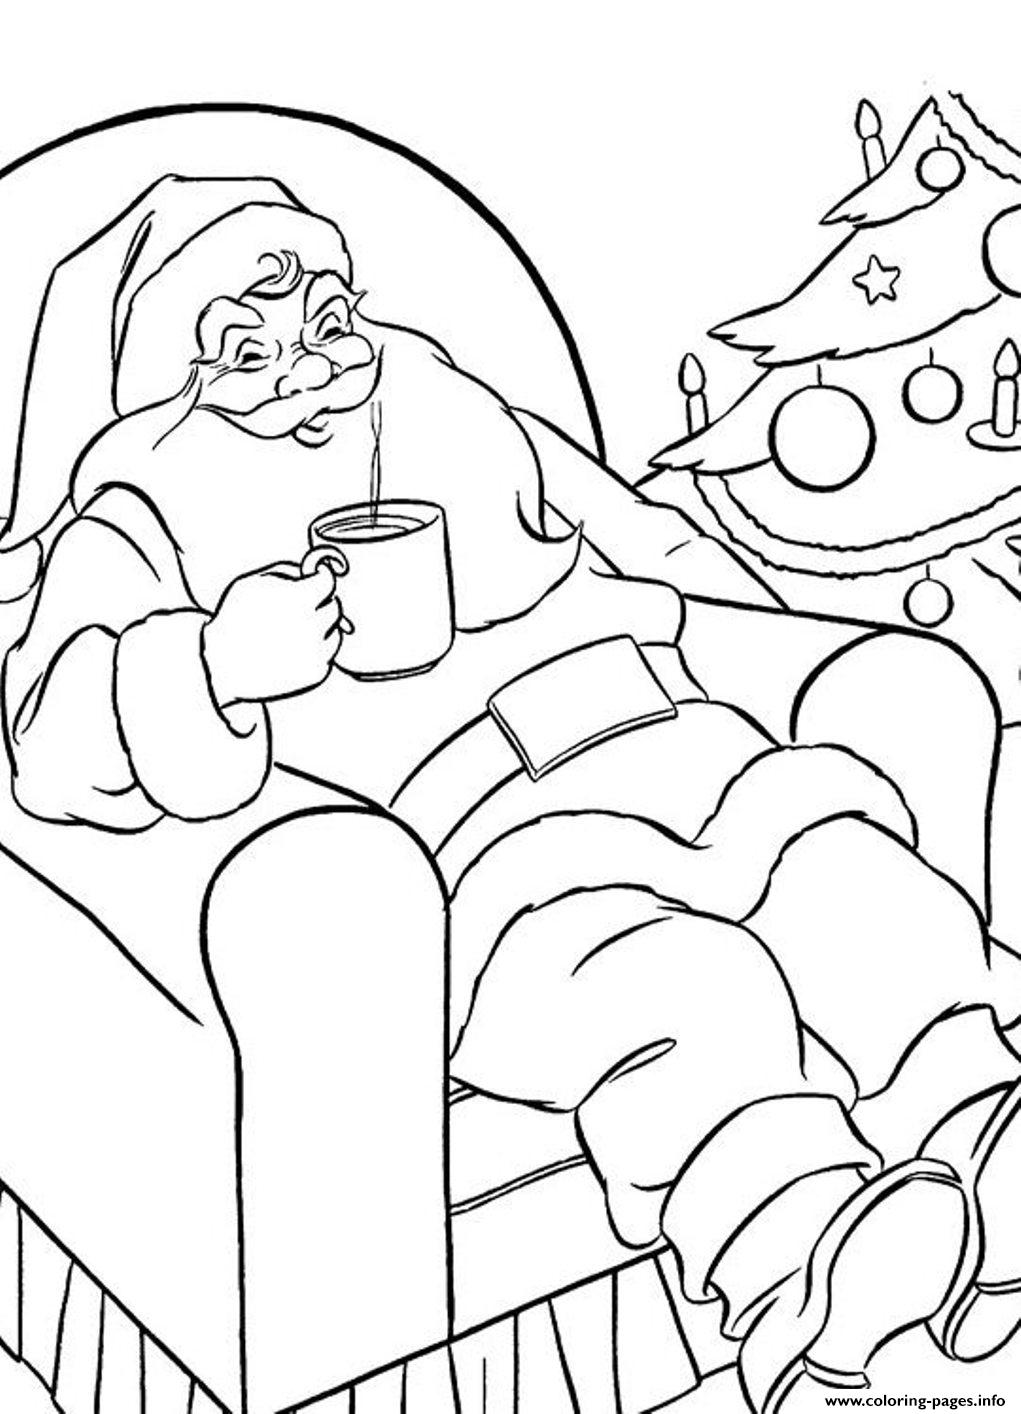 Coloring Pages Of Santa Enjoying His Hot Chocolatebc1c coloring